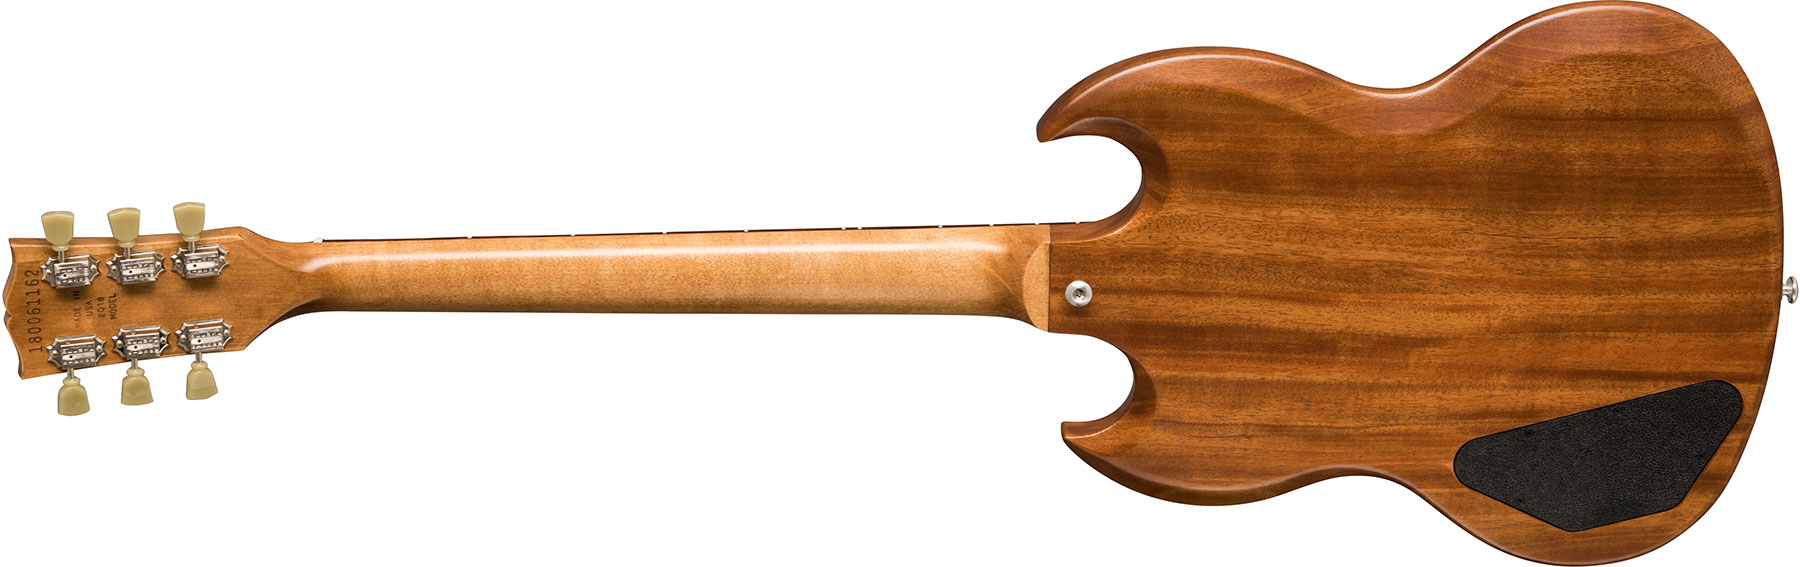 Gibson Sg Standard Tribute - Natural Walnut - Guitare Électrique Double Cut - Variation 1